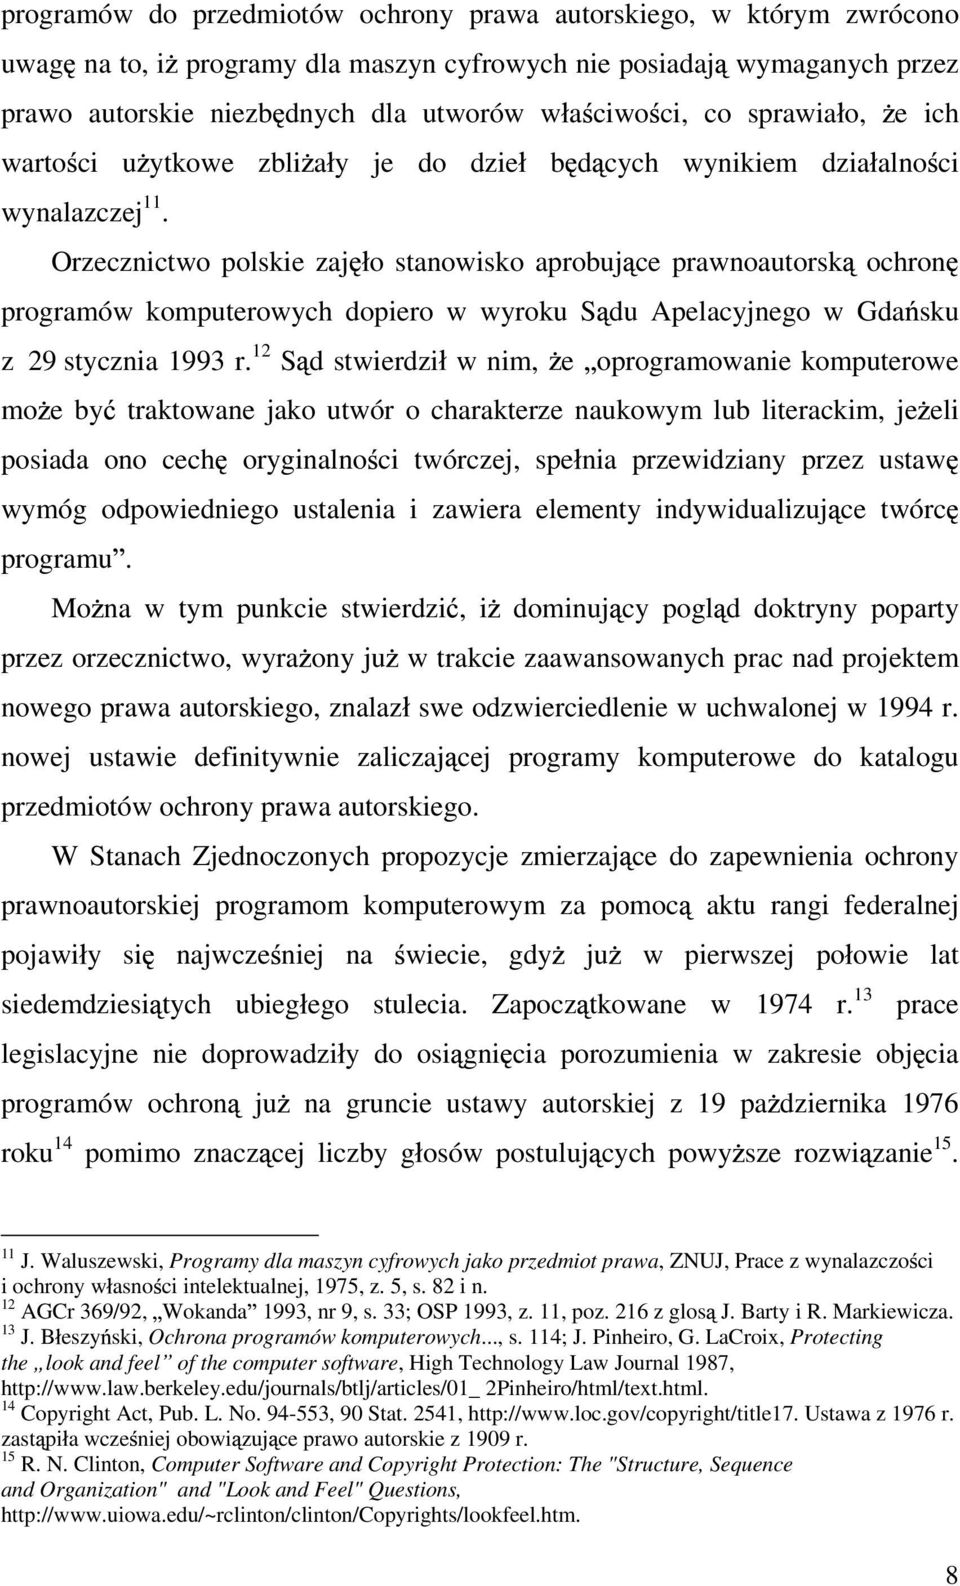 Orzecznictwo polskie zaj o stanowisko aprobuj ce prawnoautorsk ochron programów komputerowych dopiero w wyroku S du Apelacyjnego w Gda sku z 29 stycznia 1993 r.